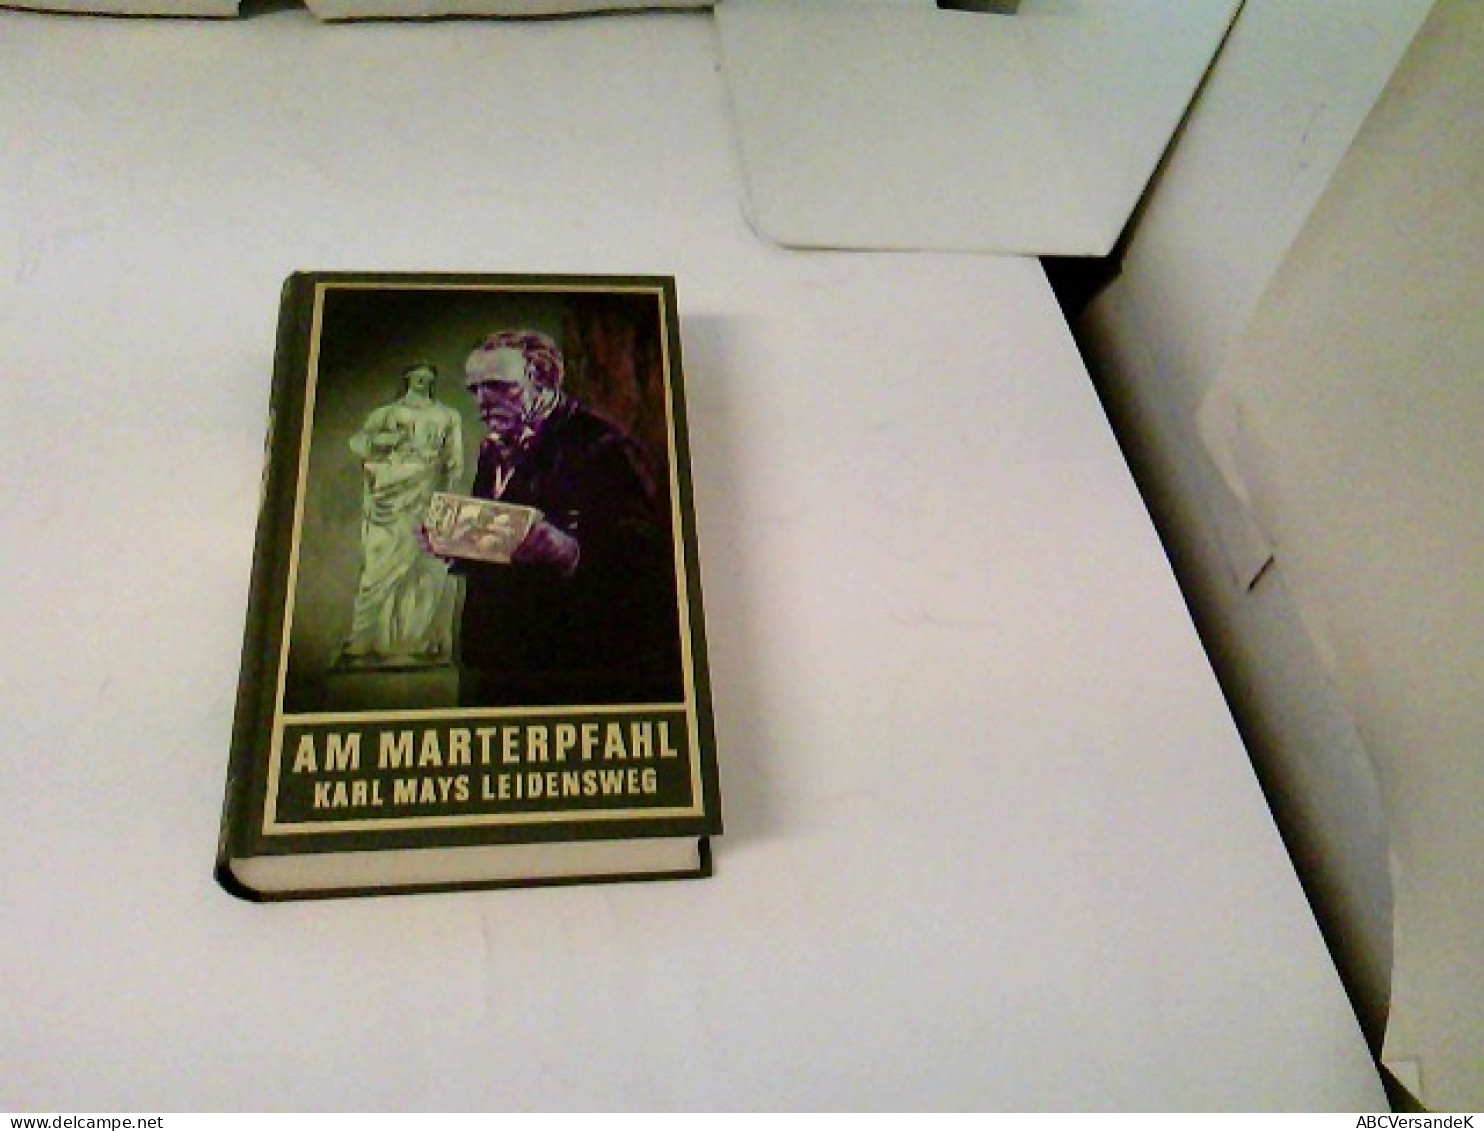 Am Marterpfahl, Band 83 Der Gesammelten Werke: Karl Mays Leidensweg. Autobiographische Schriften (Karl Mays Ge - Entertainment